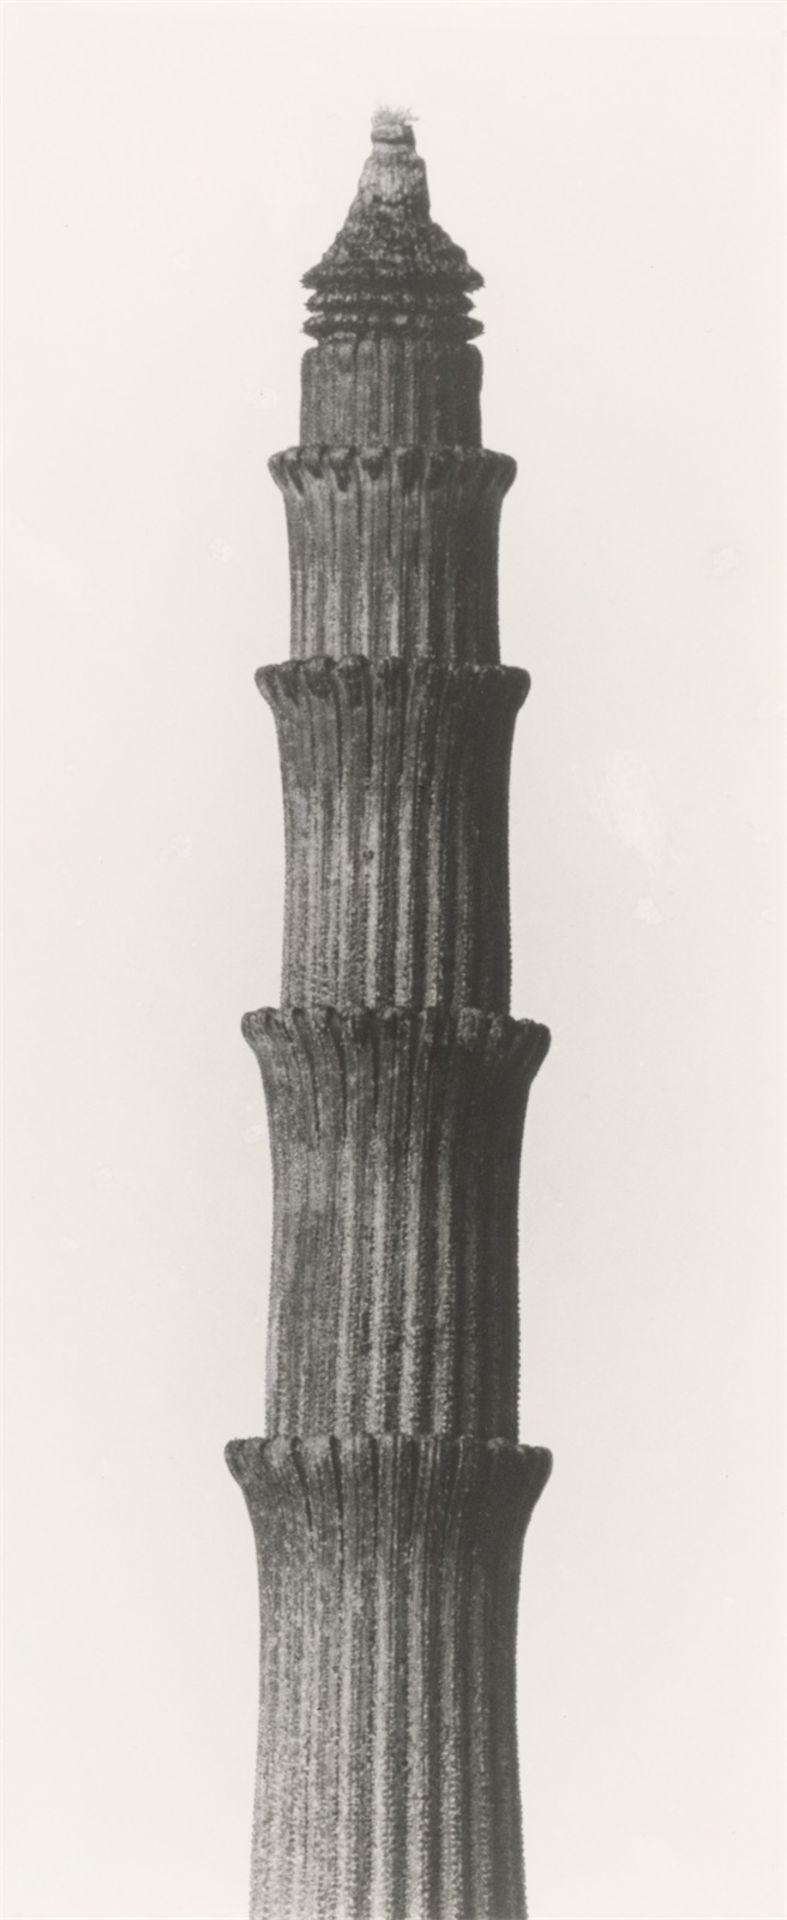 Karl Blossfeldt. ”Equisetum hyemale. Winterschachtelhalm”. 1900–1910 - Image 4 of 6